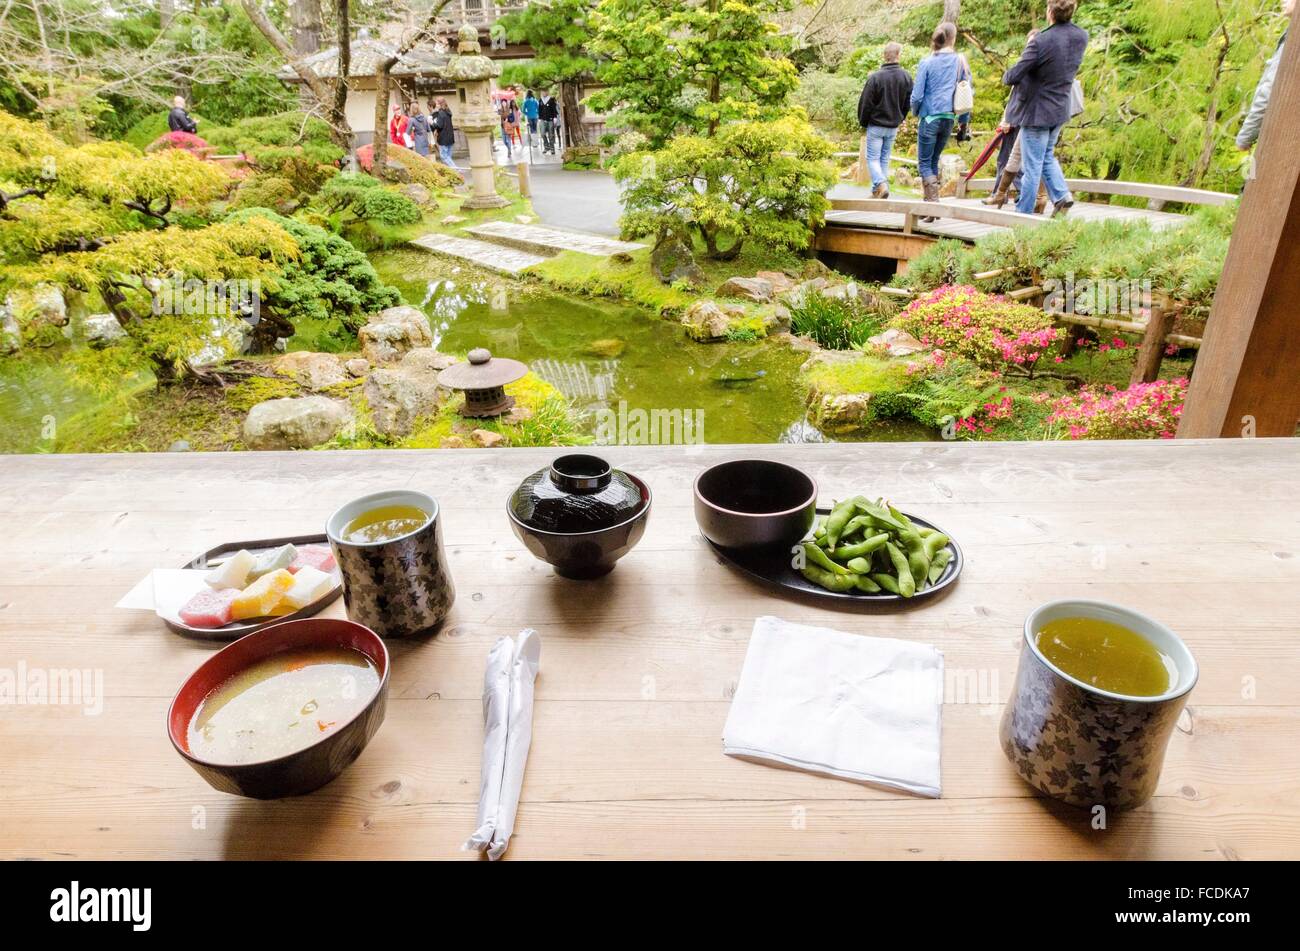 Le jardin de thé japonais dans le parc du Golden Gate à San Francisco, Californie, États-Unis d'Amérique. Une vue sur le thé vert, le miso s Banque D'Images